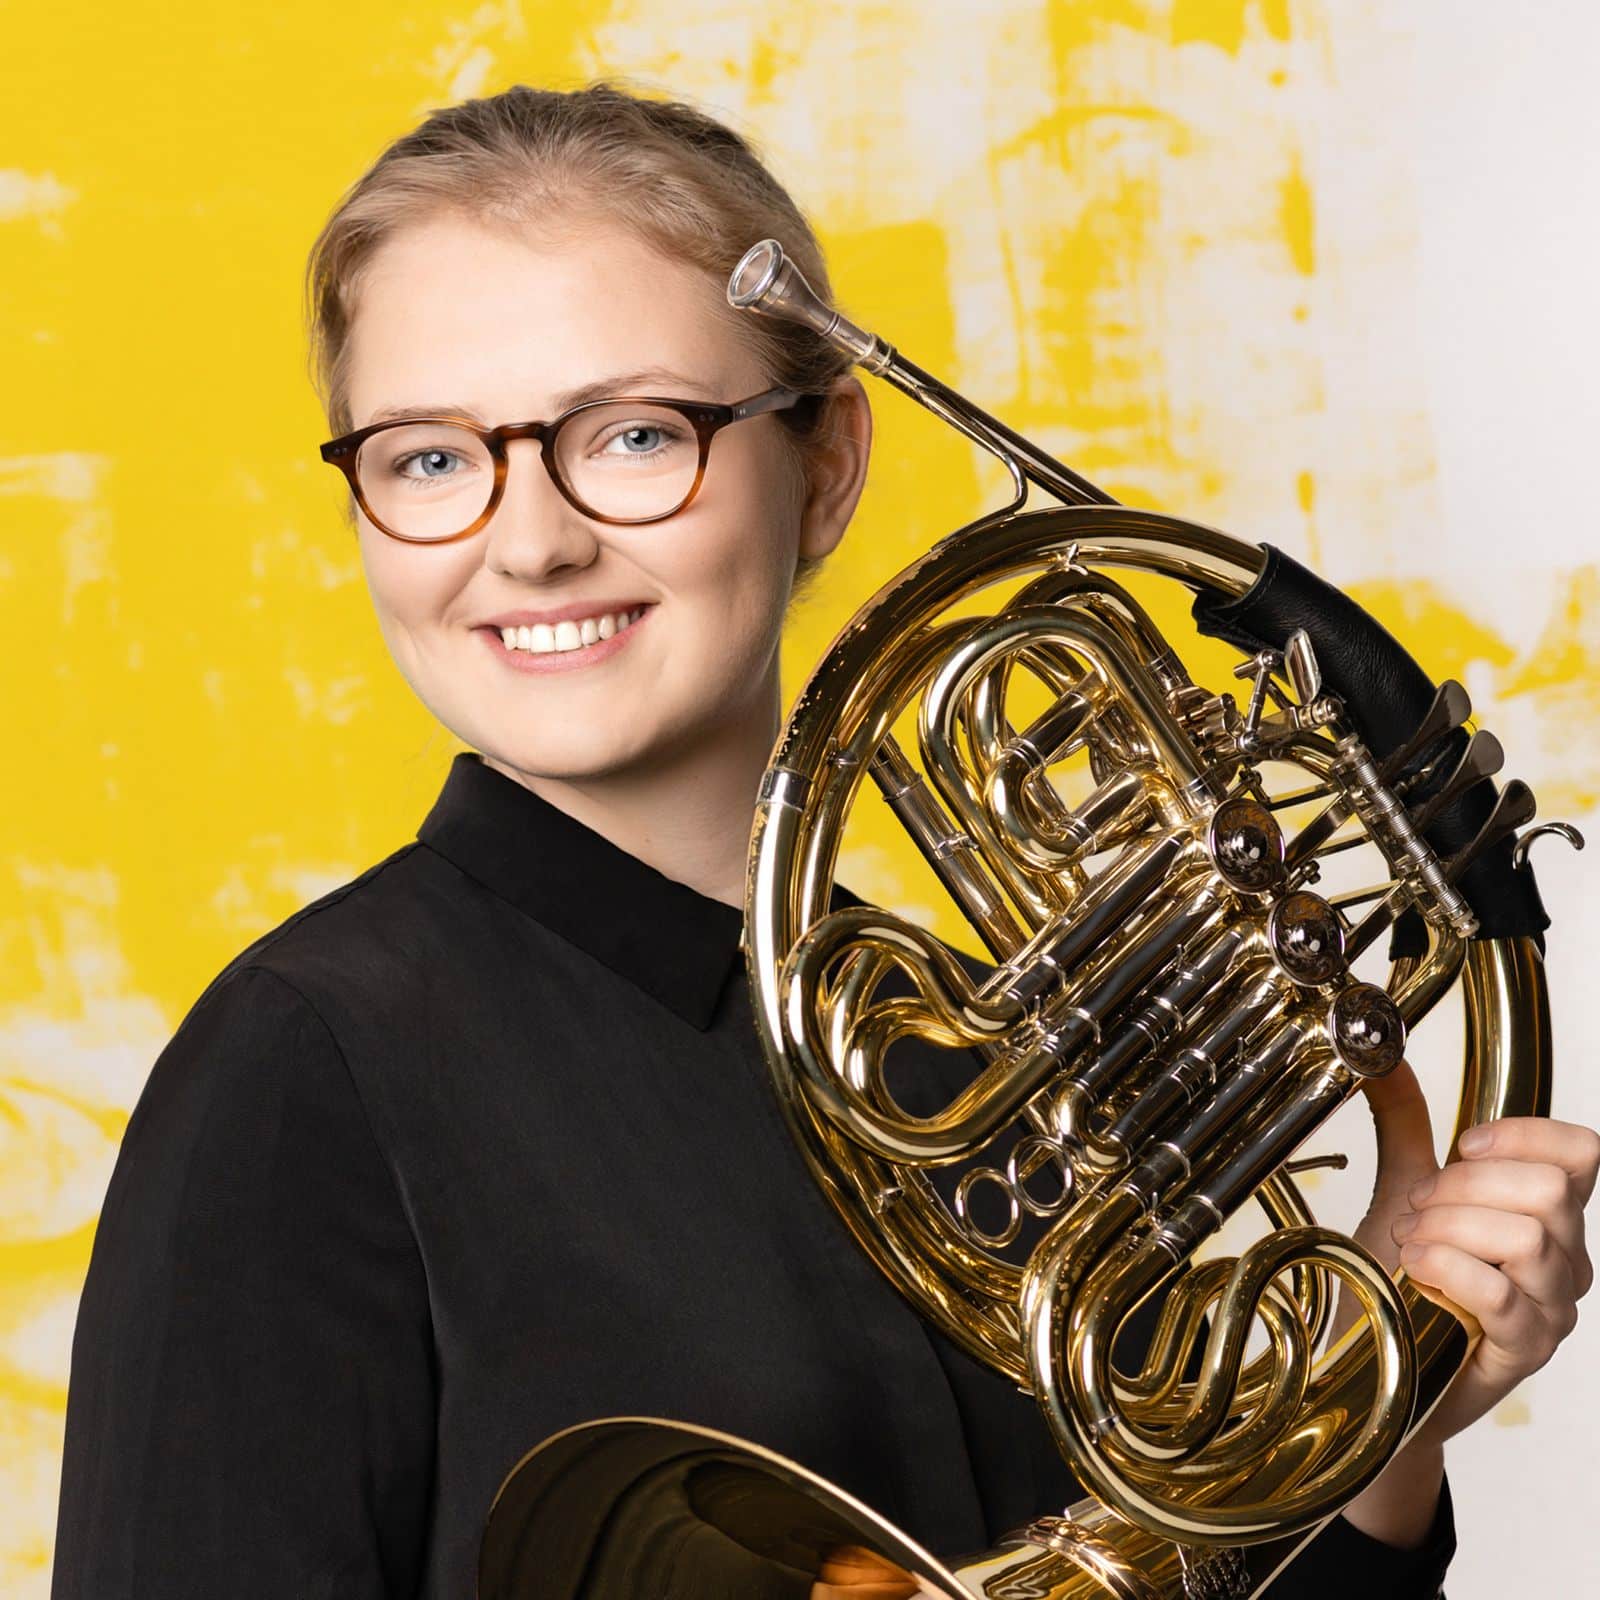 Berlin Philharmonic has a new horn